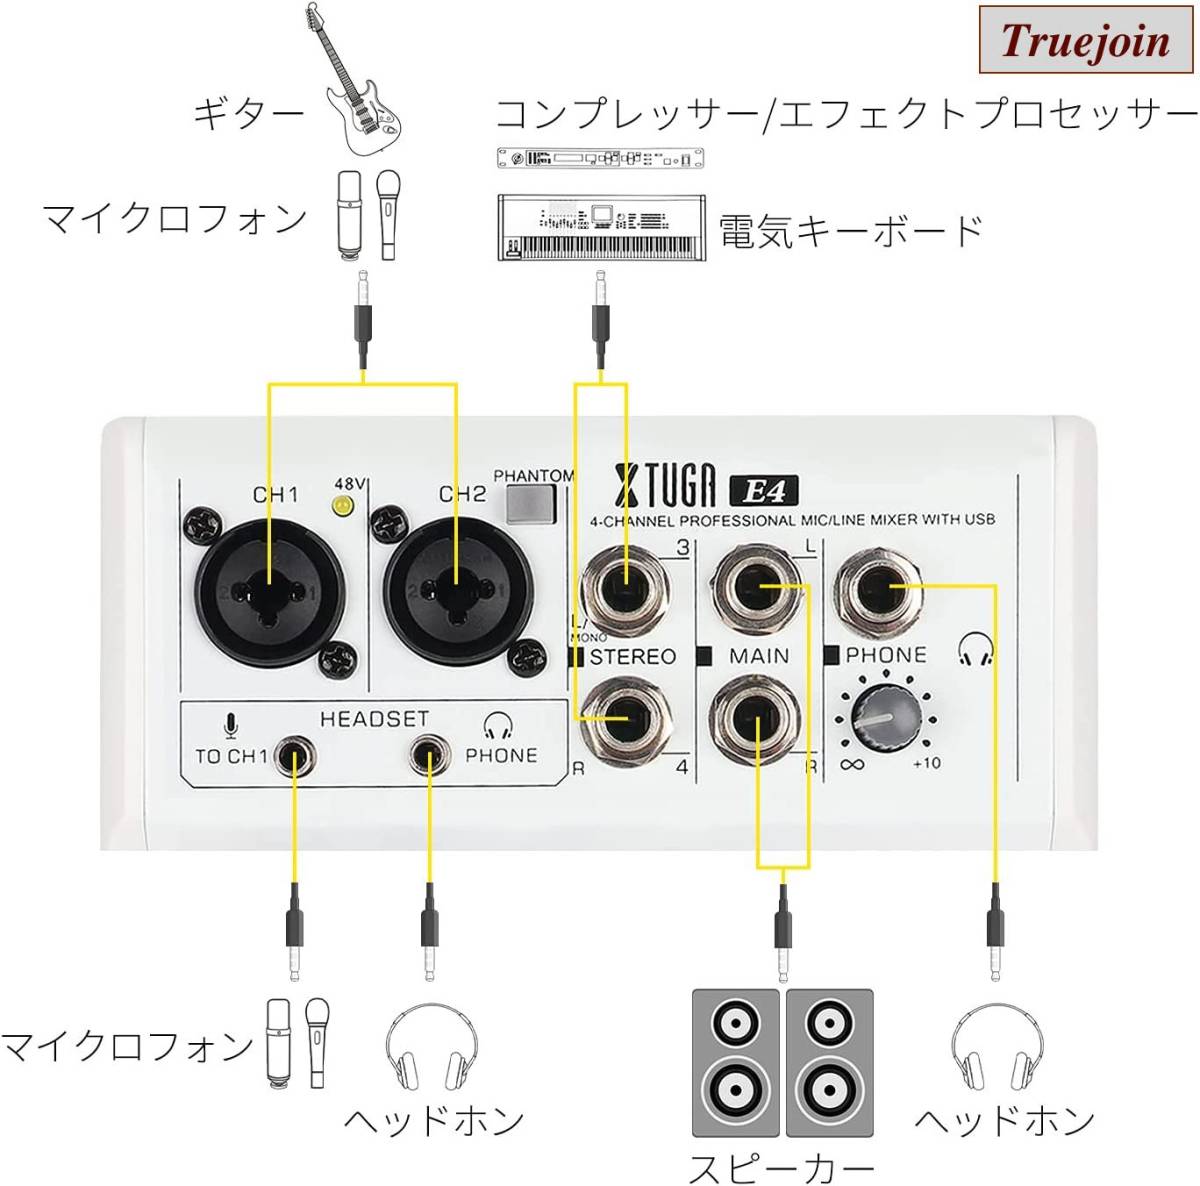 高音質D Debra Audio DI-8UX ミキサー オーディオインターフェース ポータブルレコーディングミキサーオーディオ USB 99 DSPデジタルエフェクト付き DJミキサー - 1